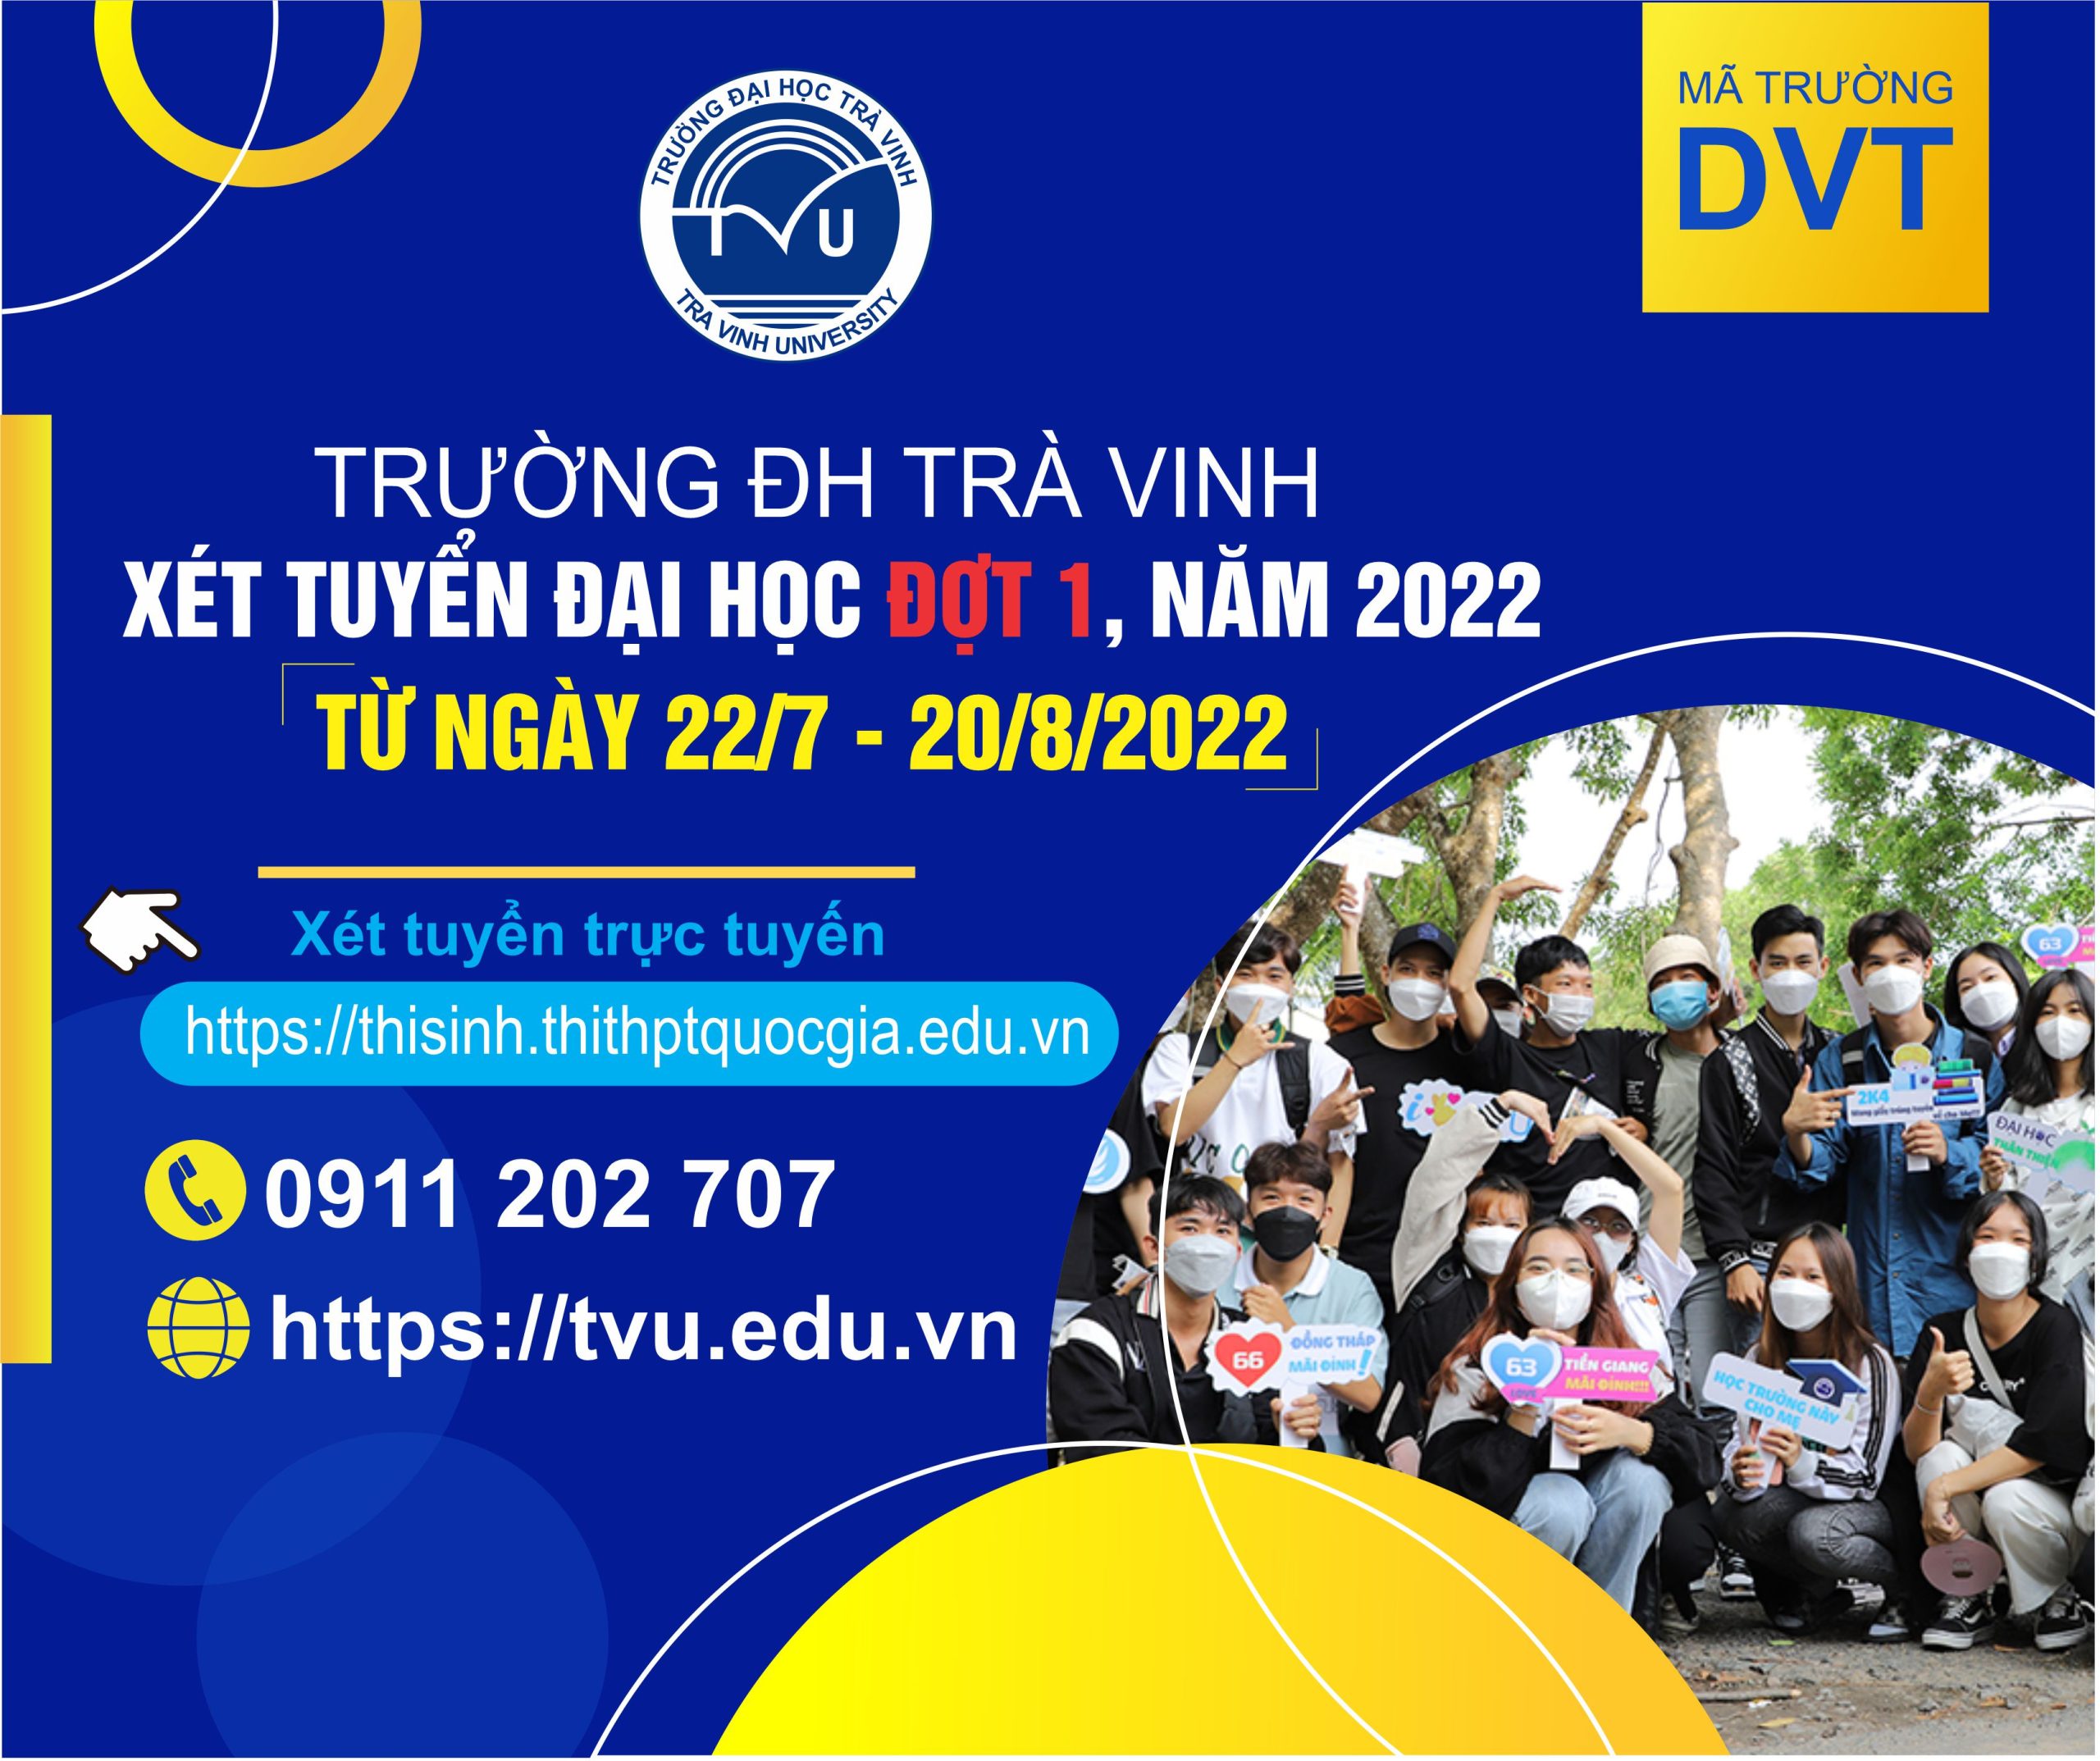 TVU – Xét tuyển đại học đợt 1, năm 2022 (từ ngày 22/7-20/8/2022)